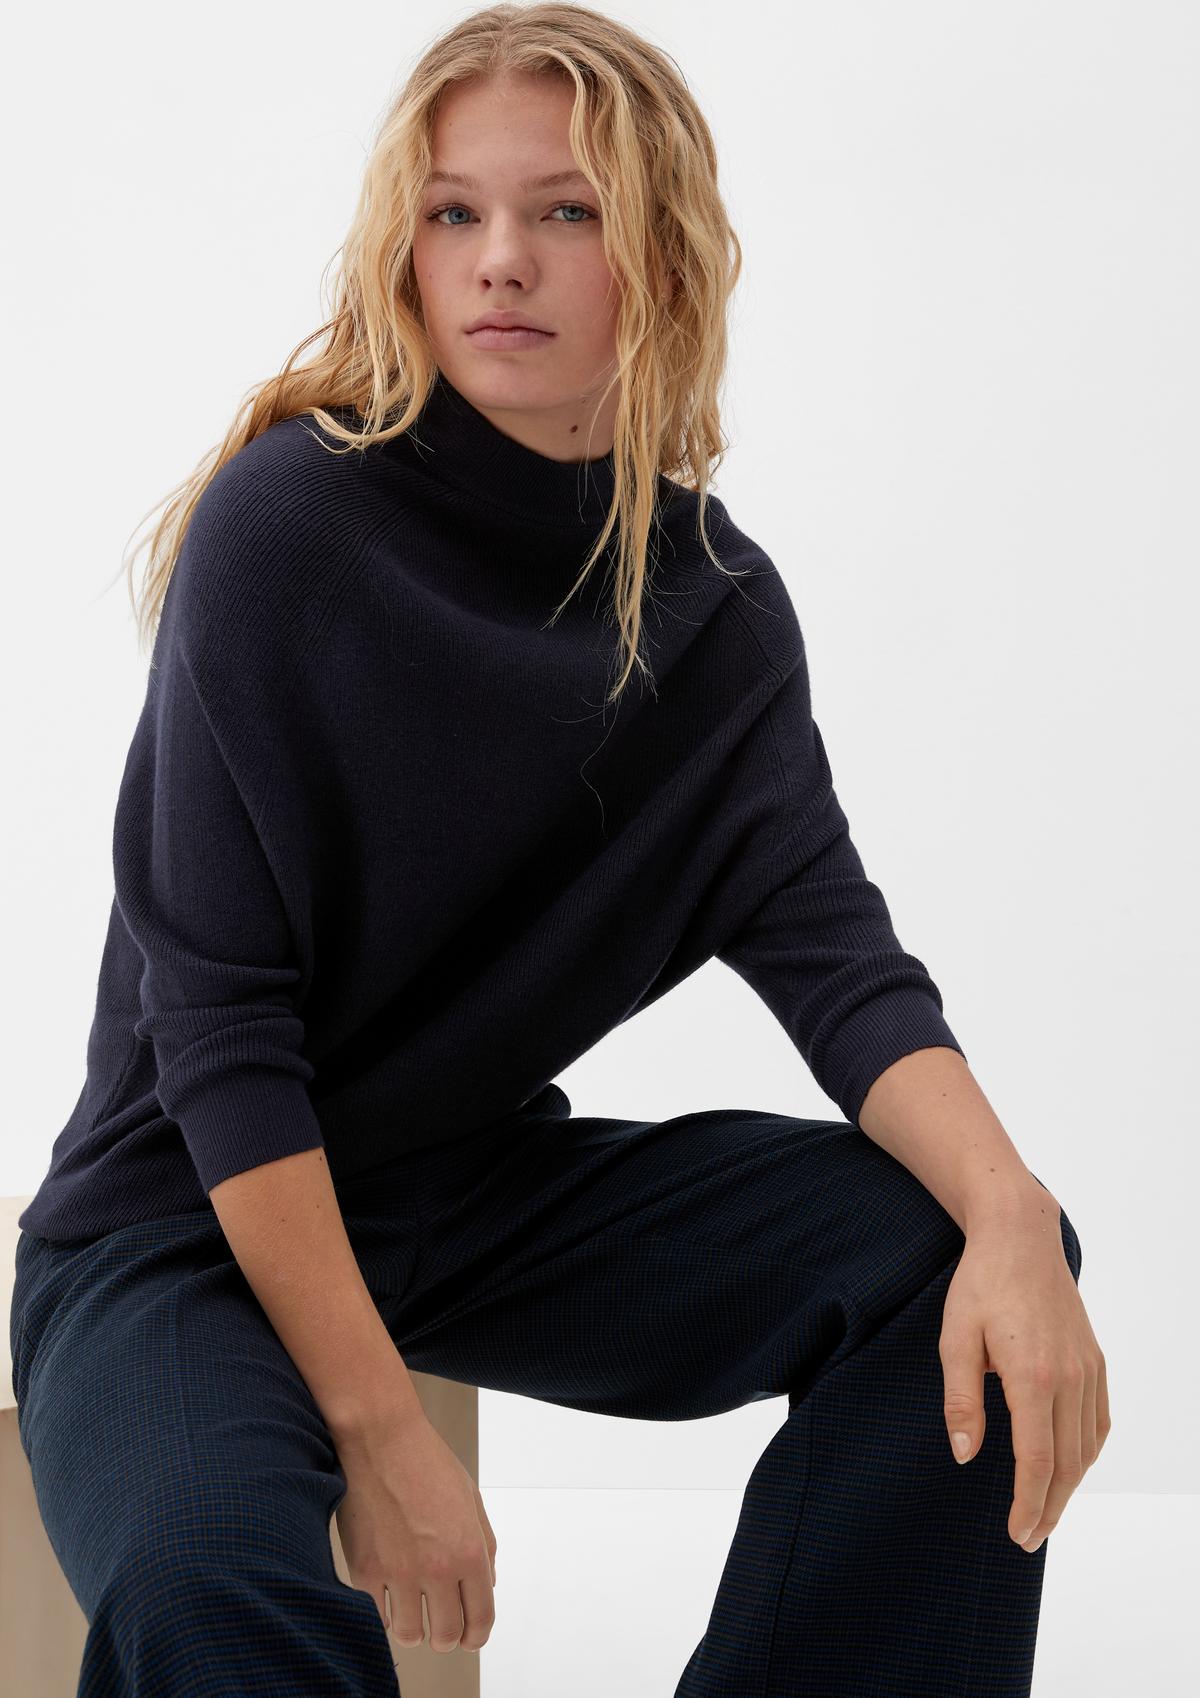 Soedan Pretentieloos Ook Gebreide truien & sweaters voor dames nu in de s.Oliver online shop | s. Oliver